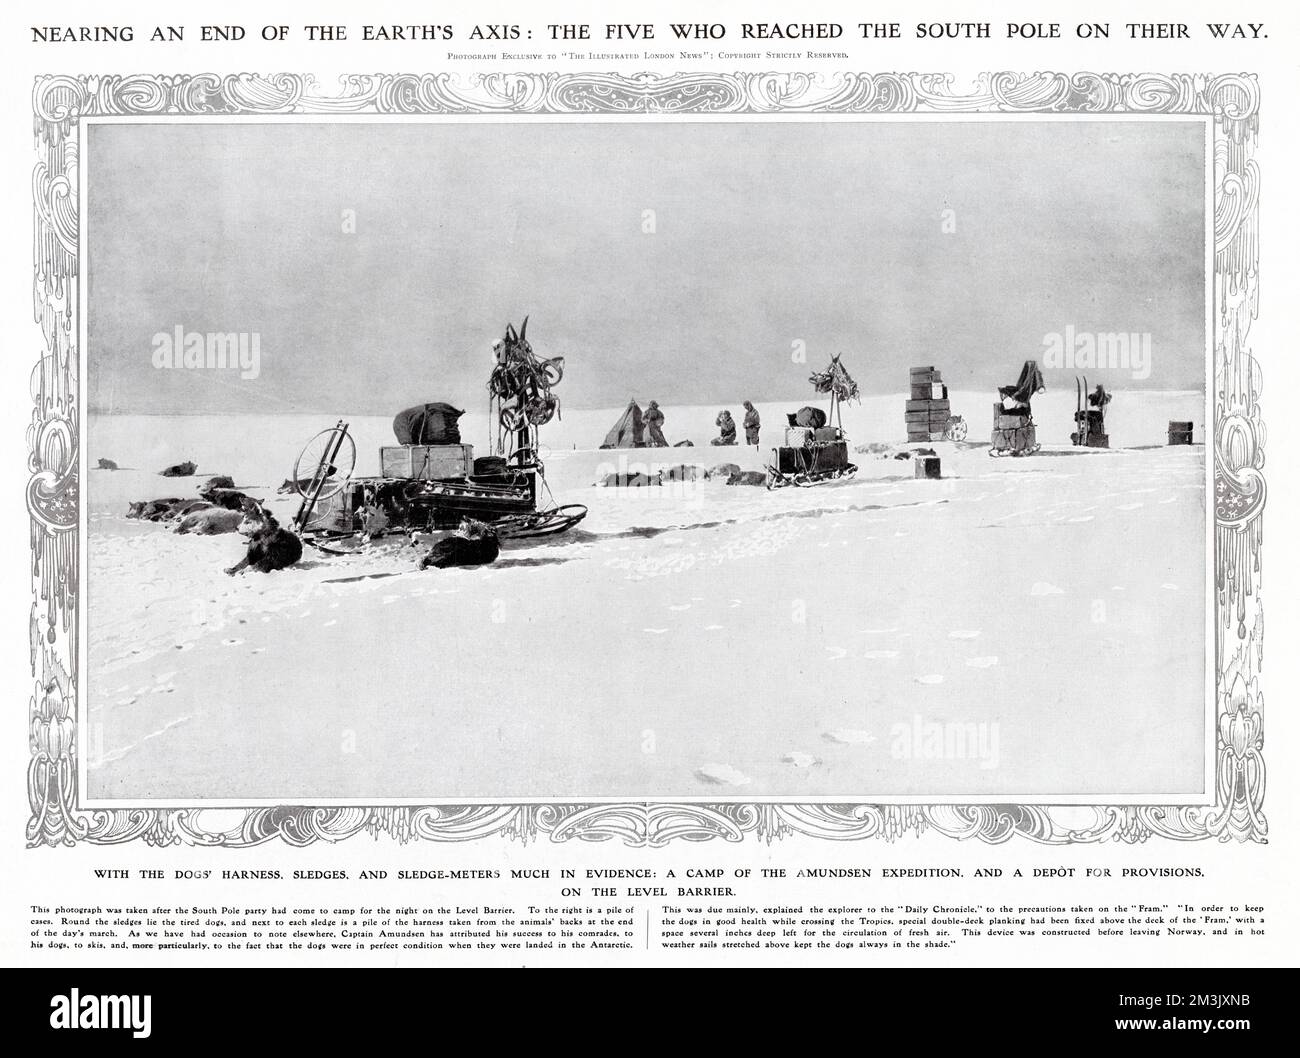 Das Schlittenteam der Amundsen Antarktis Expedition campen auf der Level Barrier, auf dem Weg zum Südpol, 1911. Im Dezember 1911 erreichten Roald Amundsen und vier andere als erste Entdecker den Südpol. Im Vordergrund sieht man die Hunde und Schlitten des Teams und im Hintergrund die Männer und ihr Zelt. Stockfoto